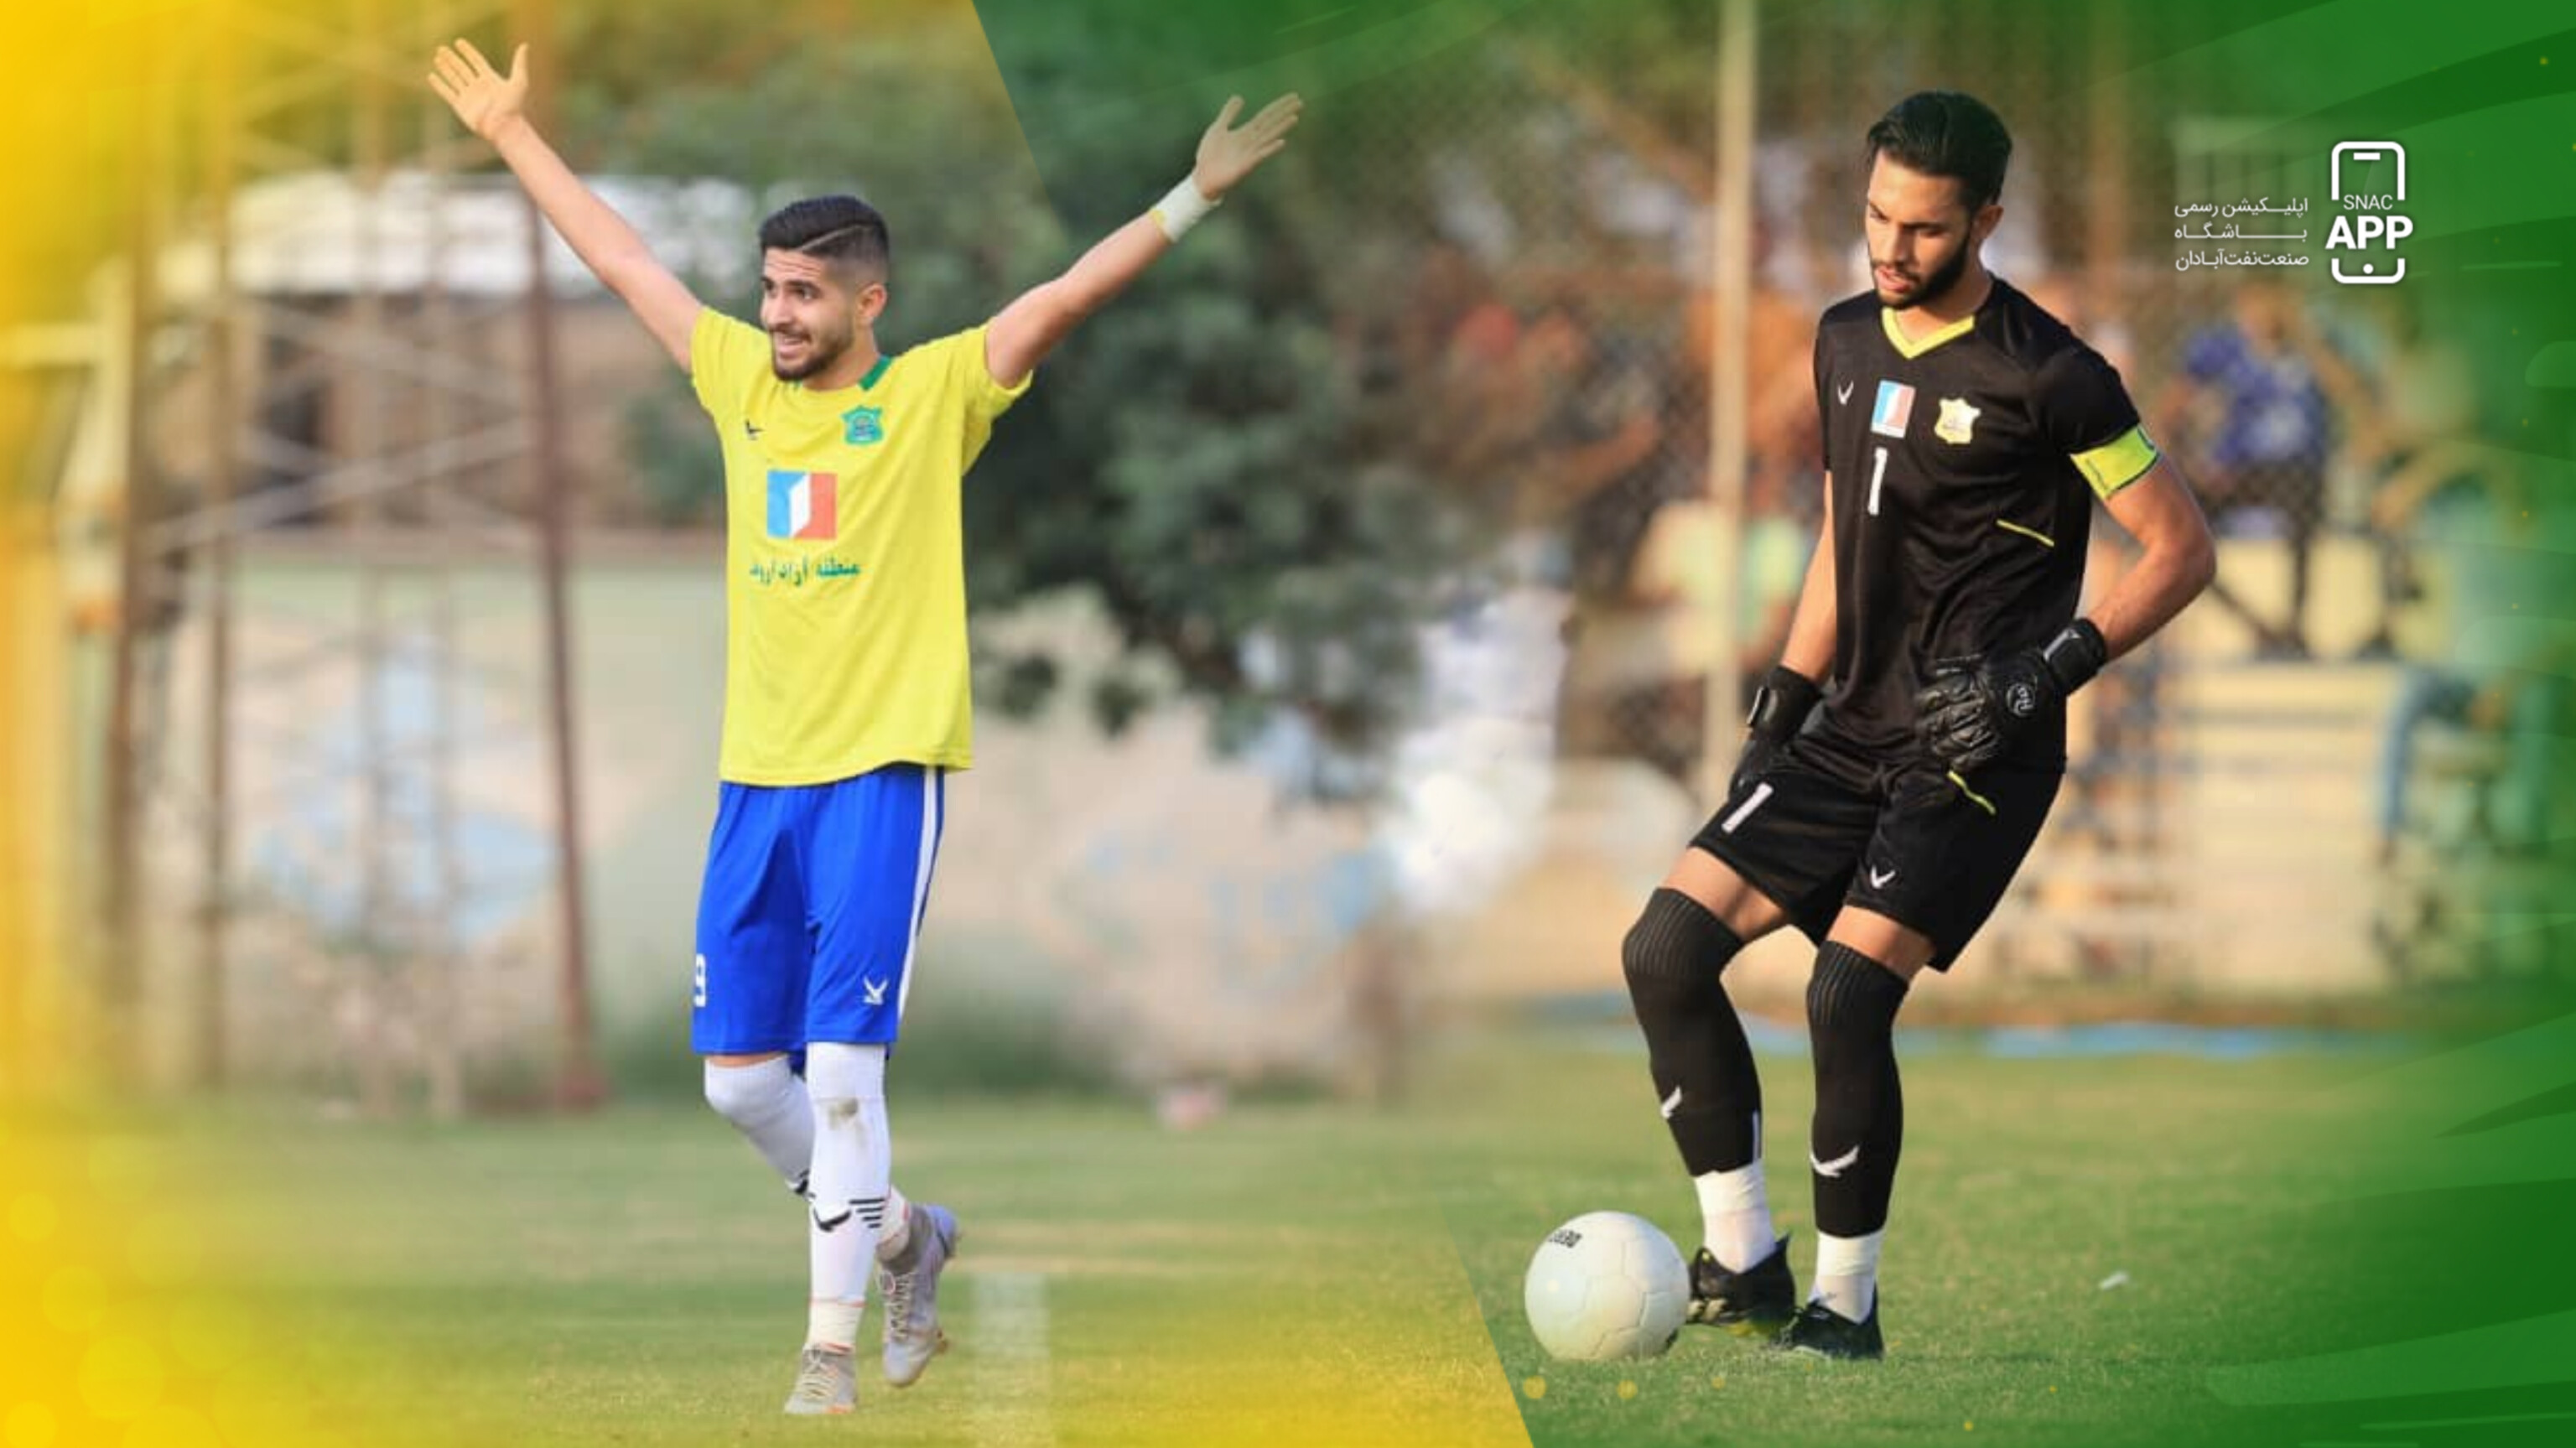 پیام پارسا و محمد حسین باصری در تیم ملی امید